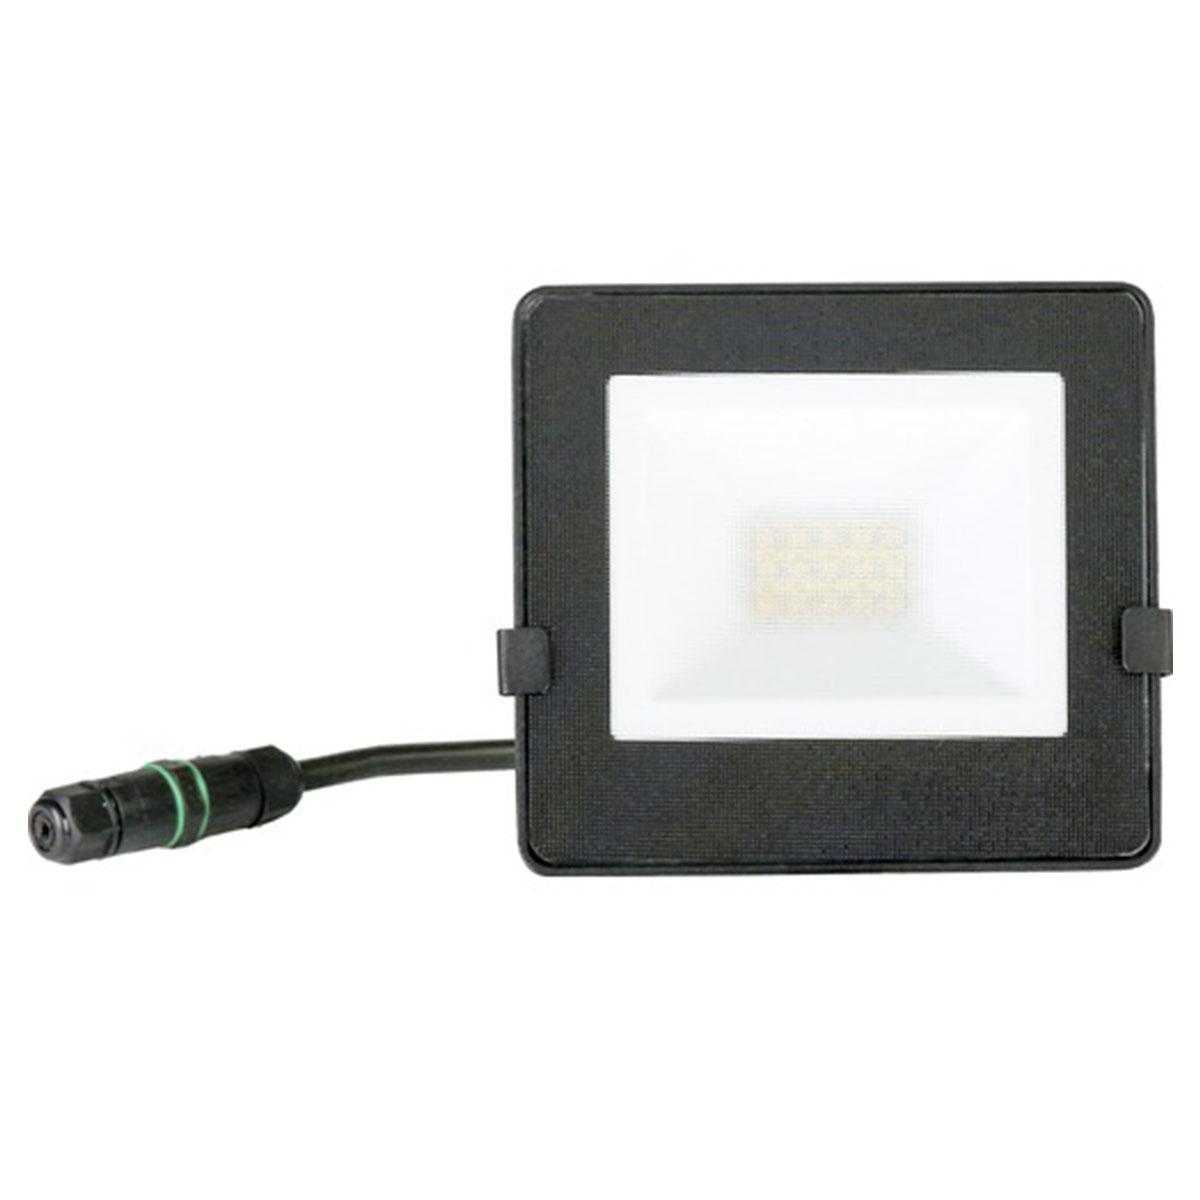 Luceco LED Strahler IP65 10W 800lm 4000K neutralweiß schwarz